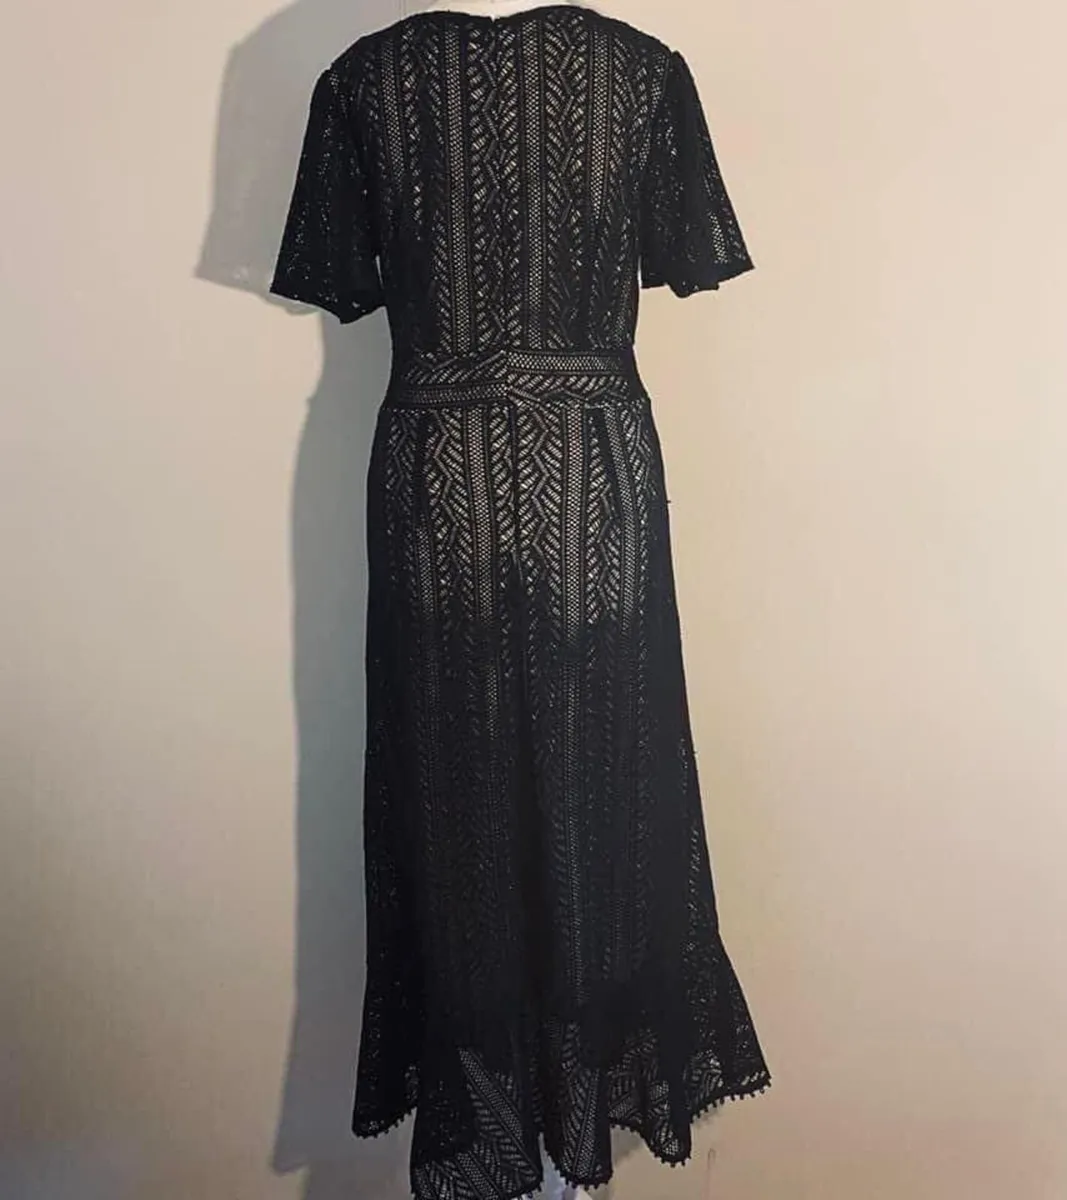 Isabel London Lace Short Sleeve Maxi Dress, Size 8 - Image 3